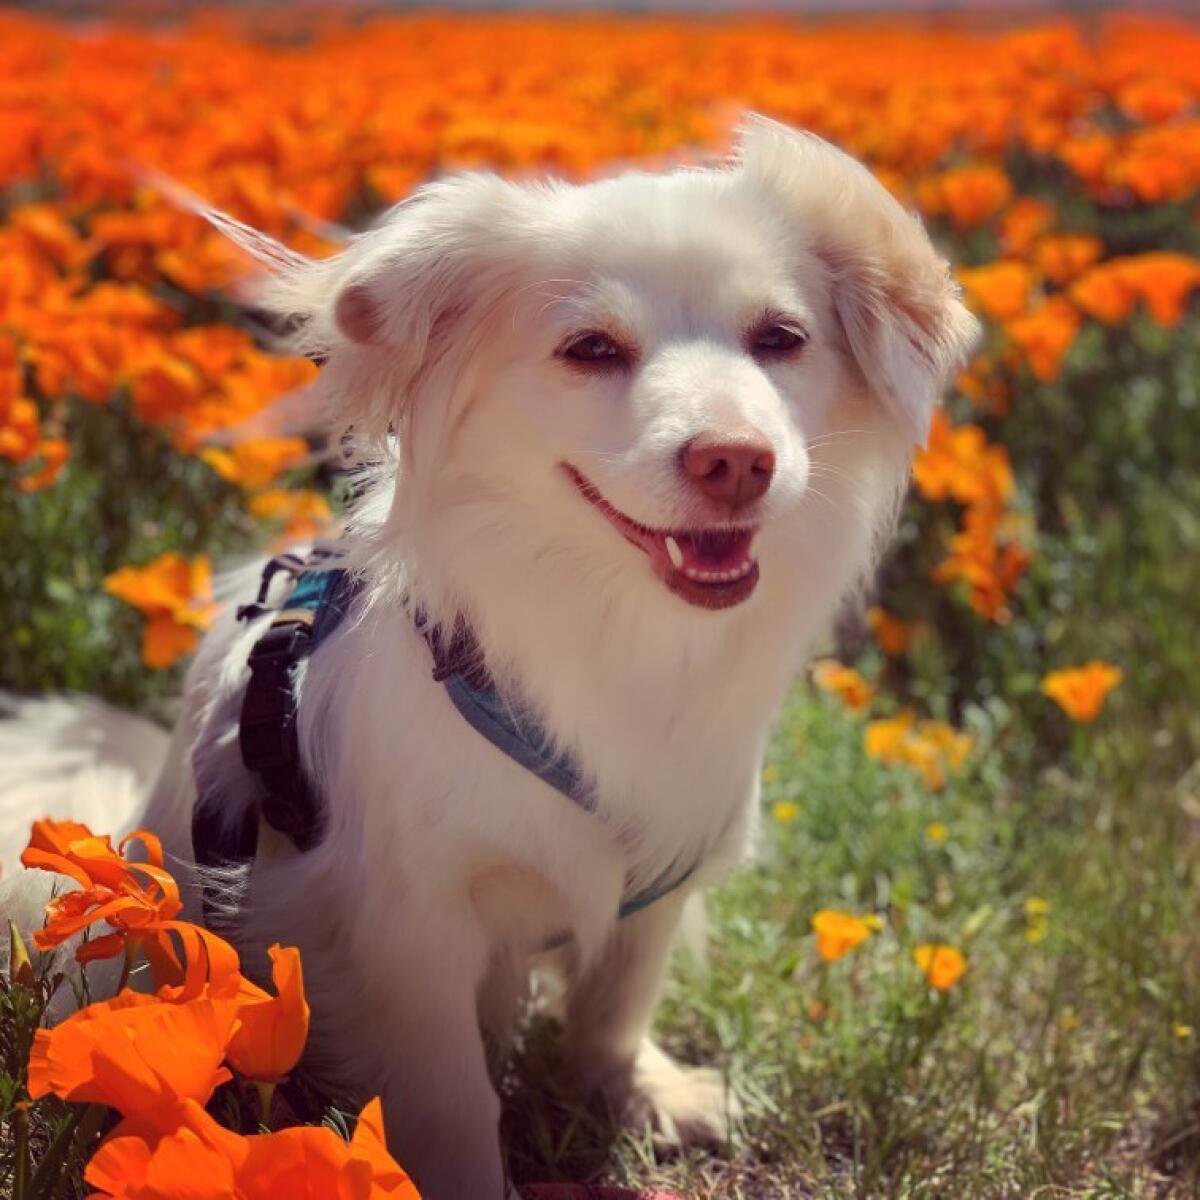 Reader Jenna Heffernan's dog in superbloom flowers